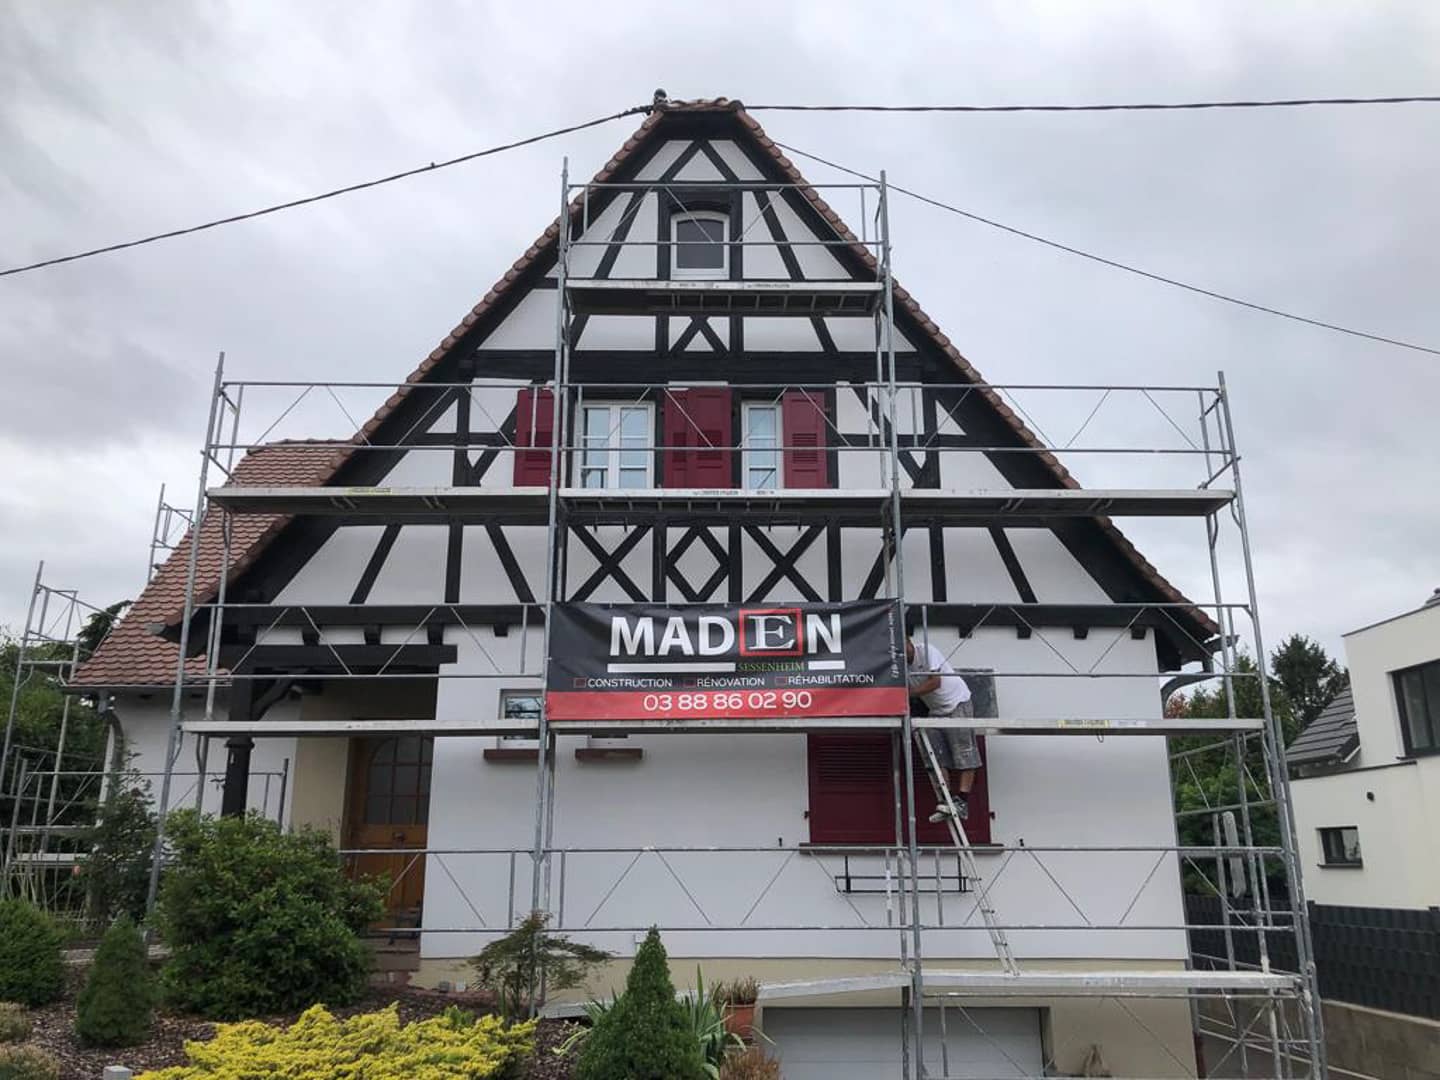 Ravalement de facade avec traitement de colombage a Neuhausel dans le Bas Rhin Maden Sessenheim 10